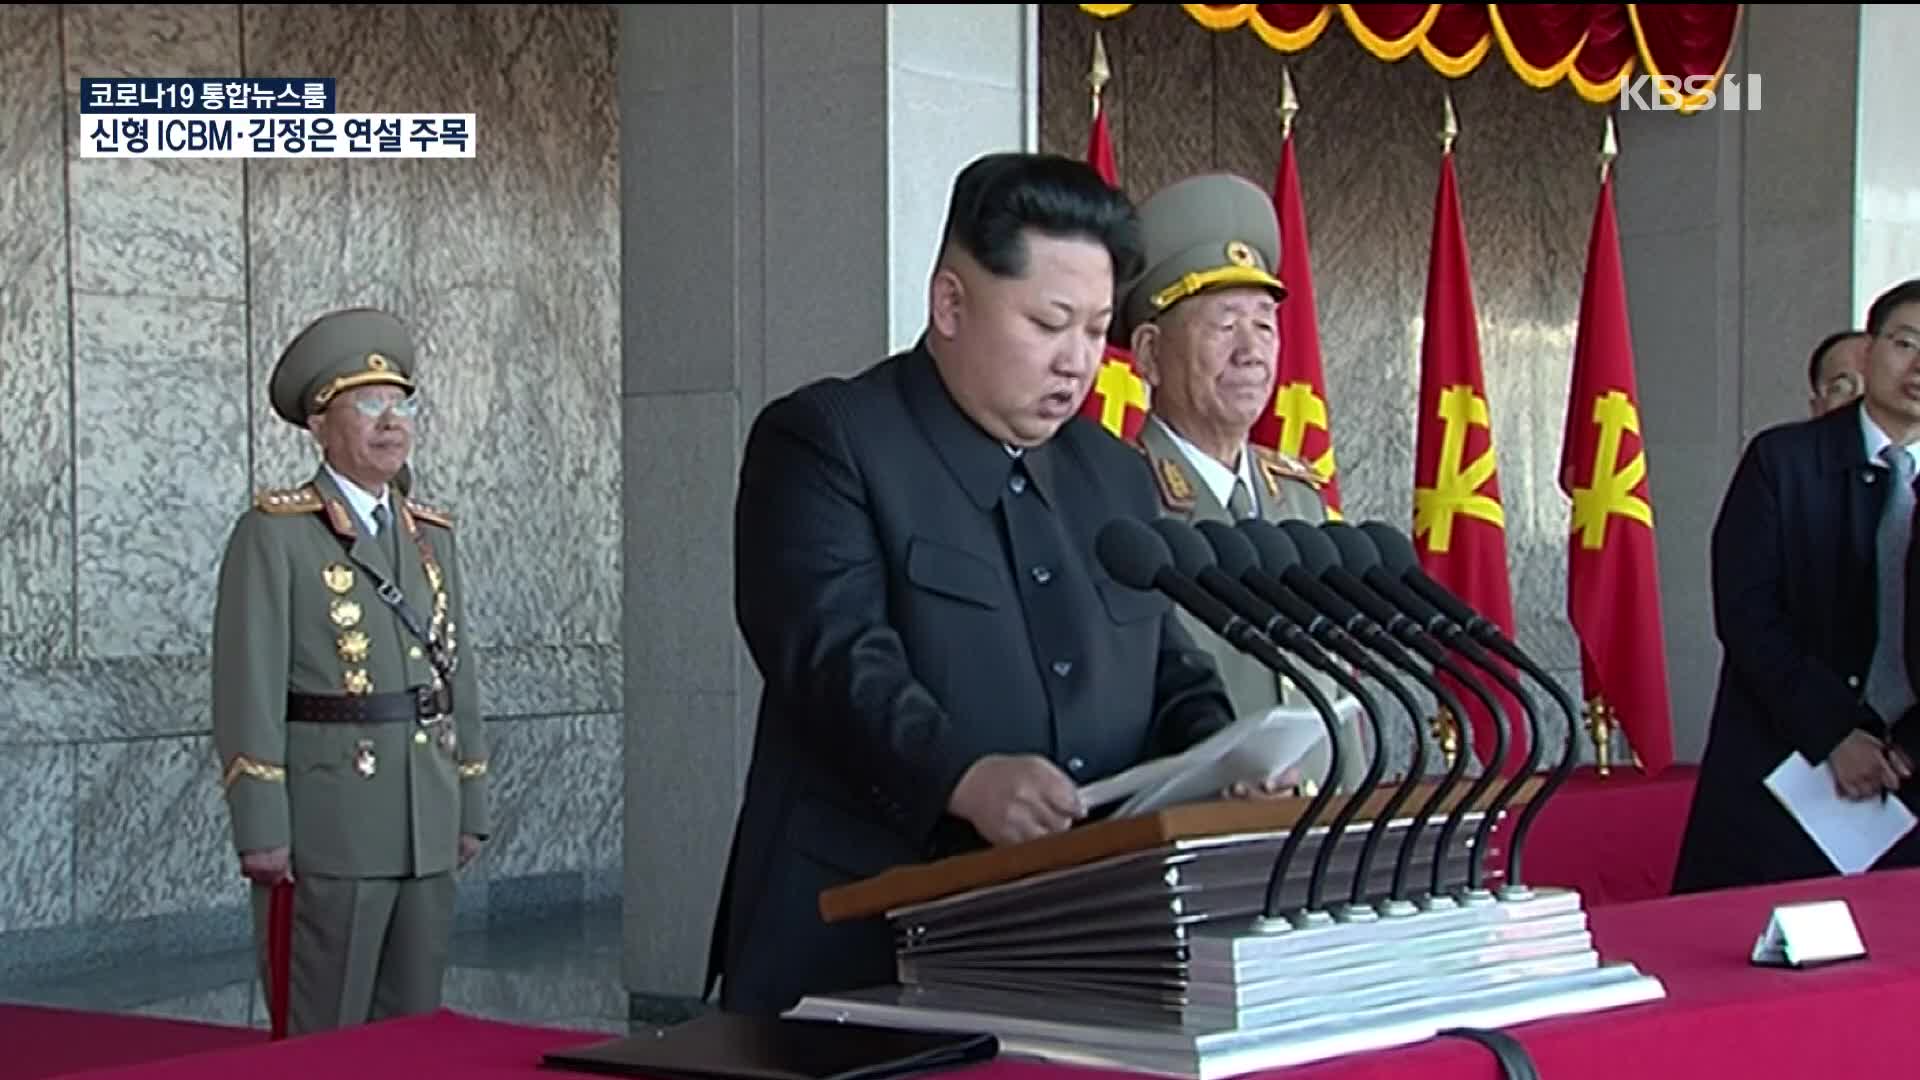 北, 내일 대규모 열병식 예상…ICBM·김정은 연설 주목